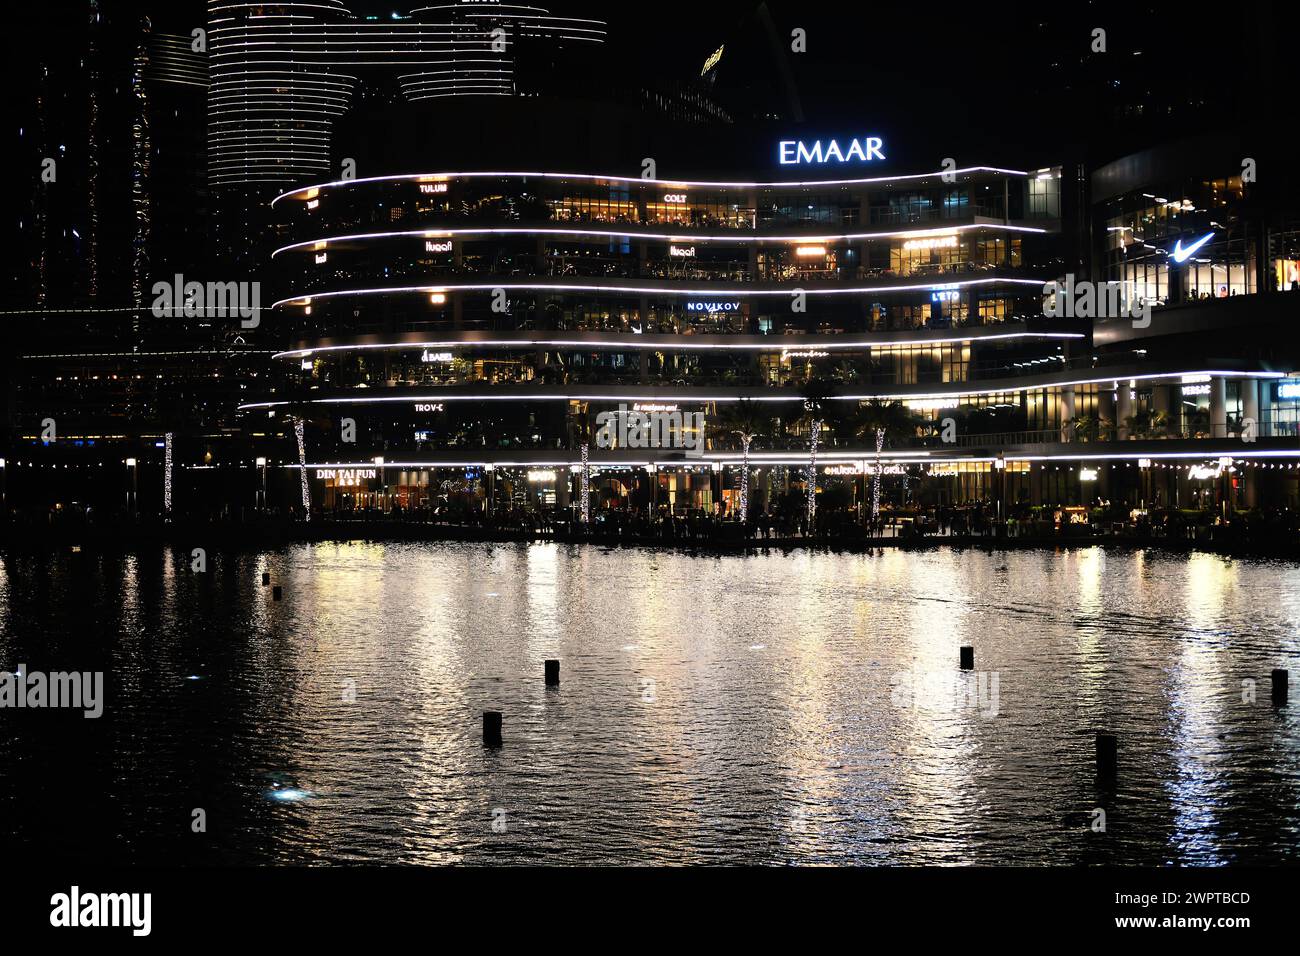 Nächtlicher Blick auf Dubais pulsierende Uferpromenade mit beleuchteten modernen Gebäuden, die sich auf der ruhigen Wasseroberfläche spiegeln. Dubai, VAE - 15. August 2023 Stockfoto